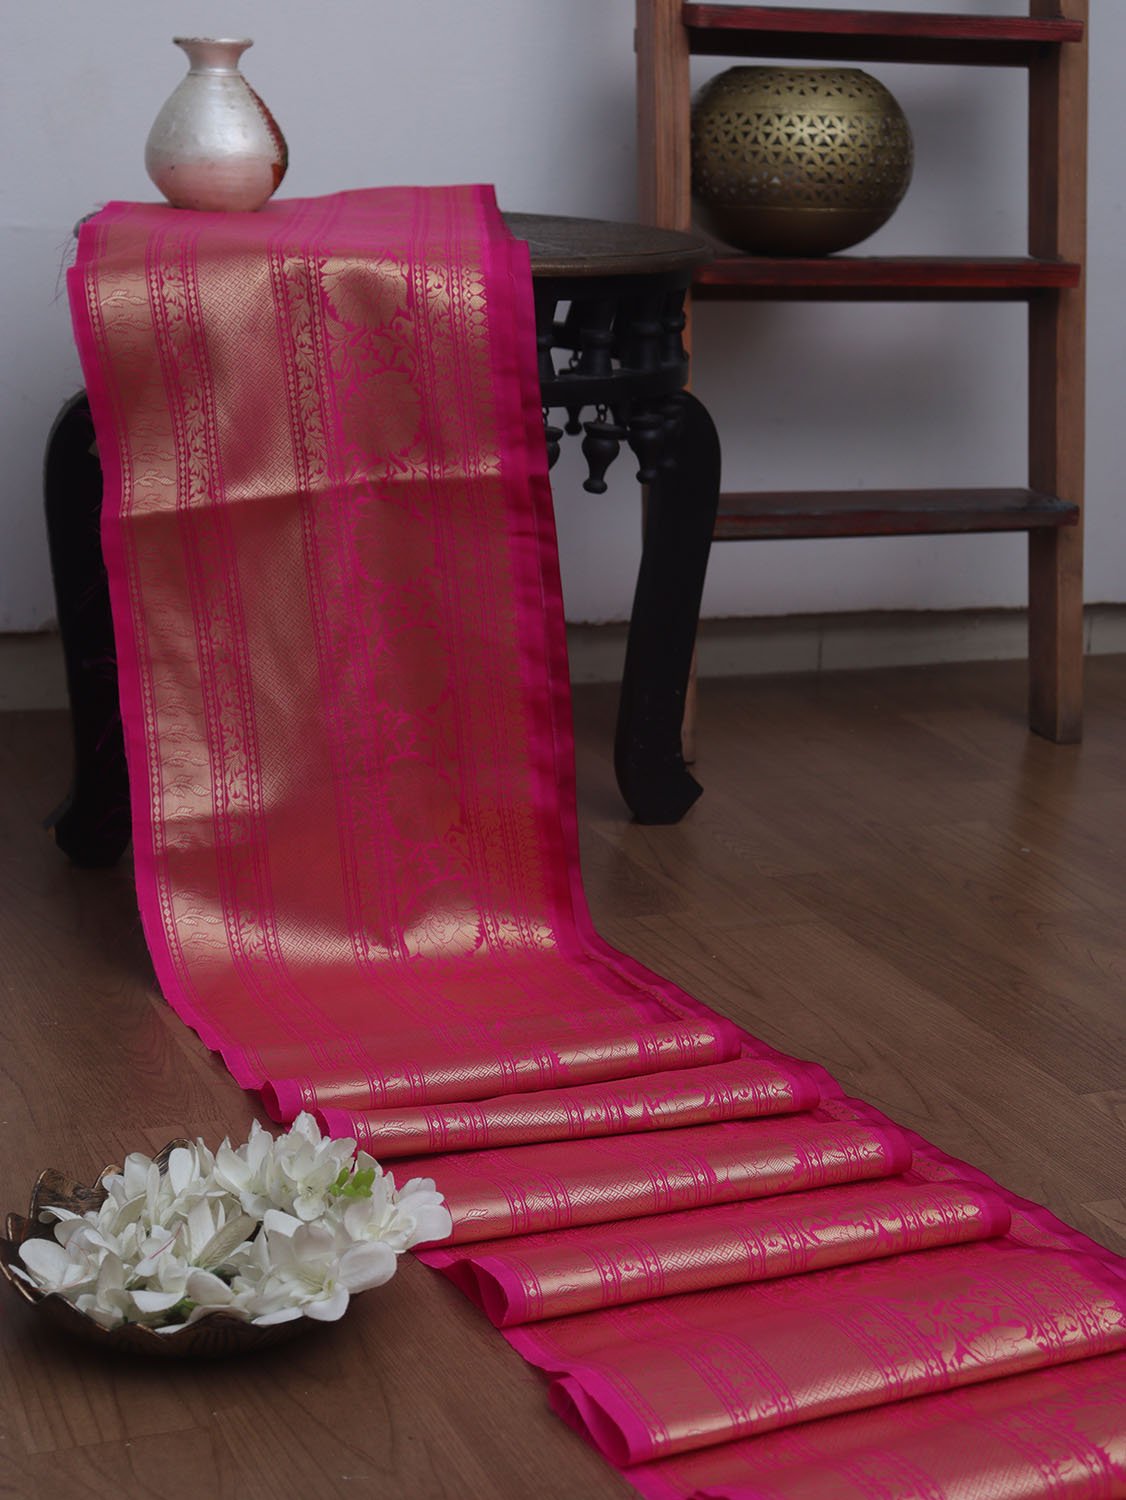 Pink Banarasi Silk Lace: Exquisite 1 Mtr Trim for Elegant Designs